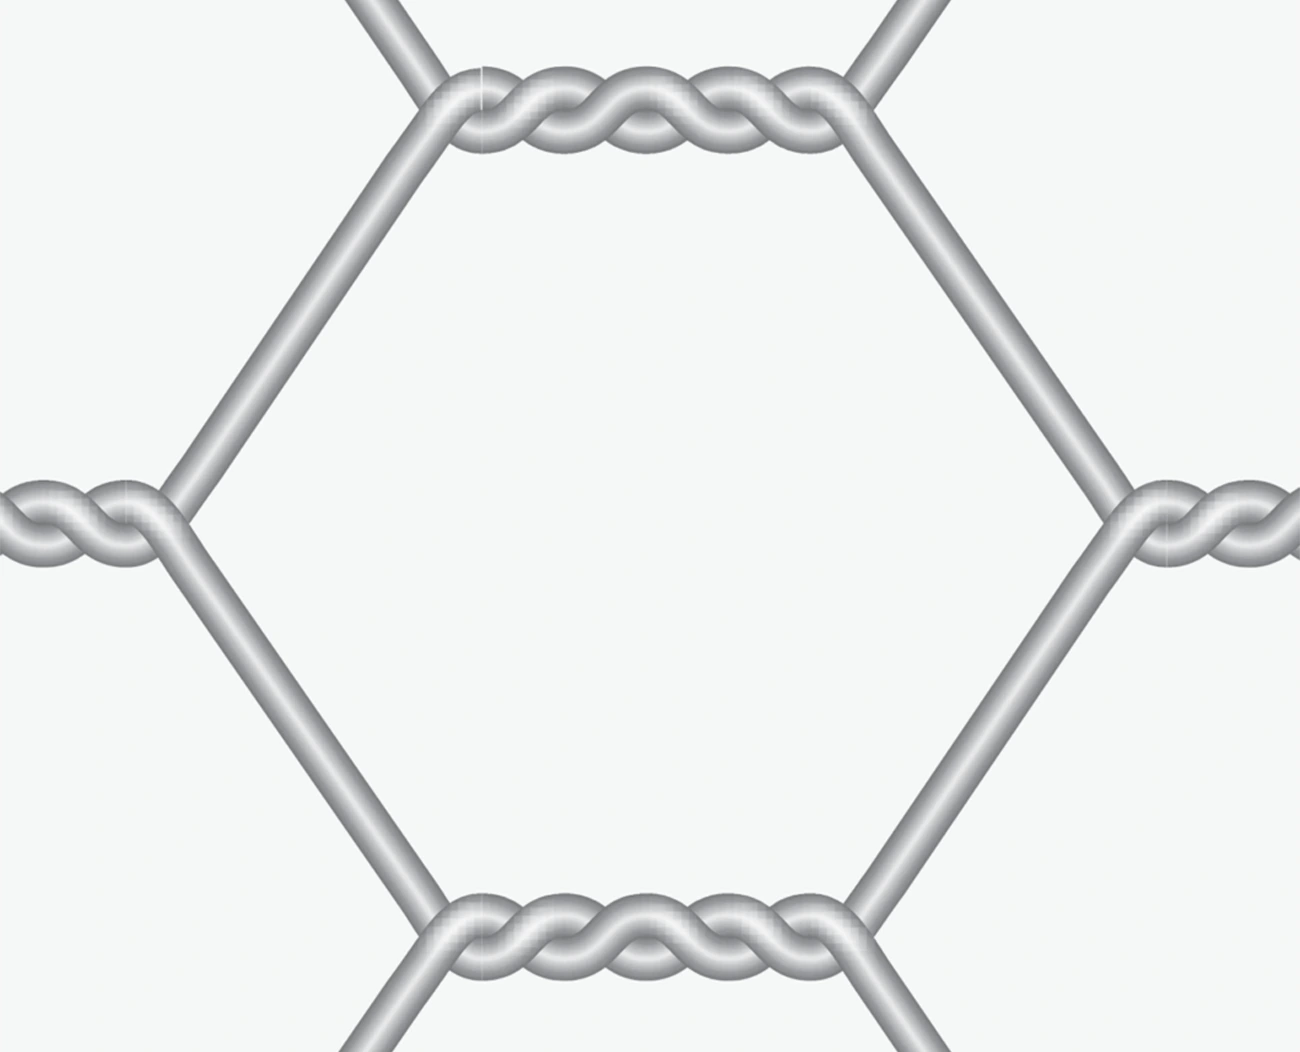 Hexagonal Wire Mesh Netting Details